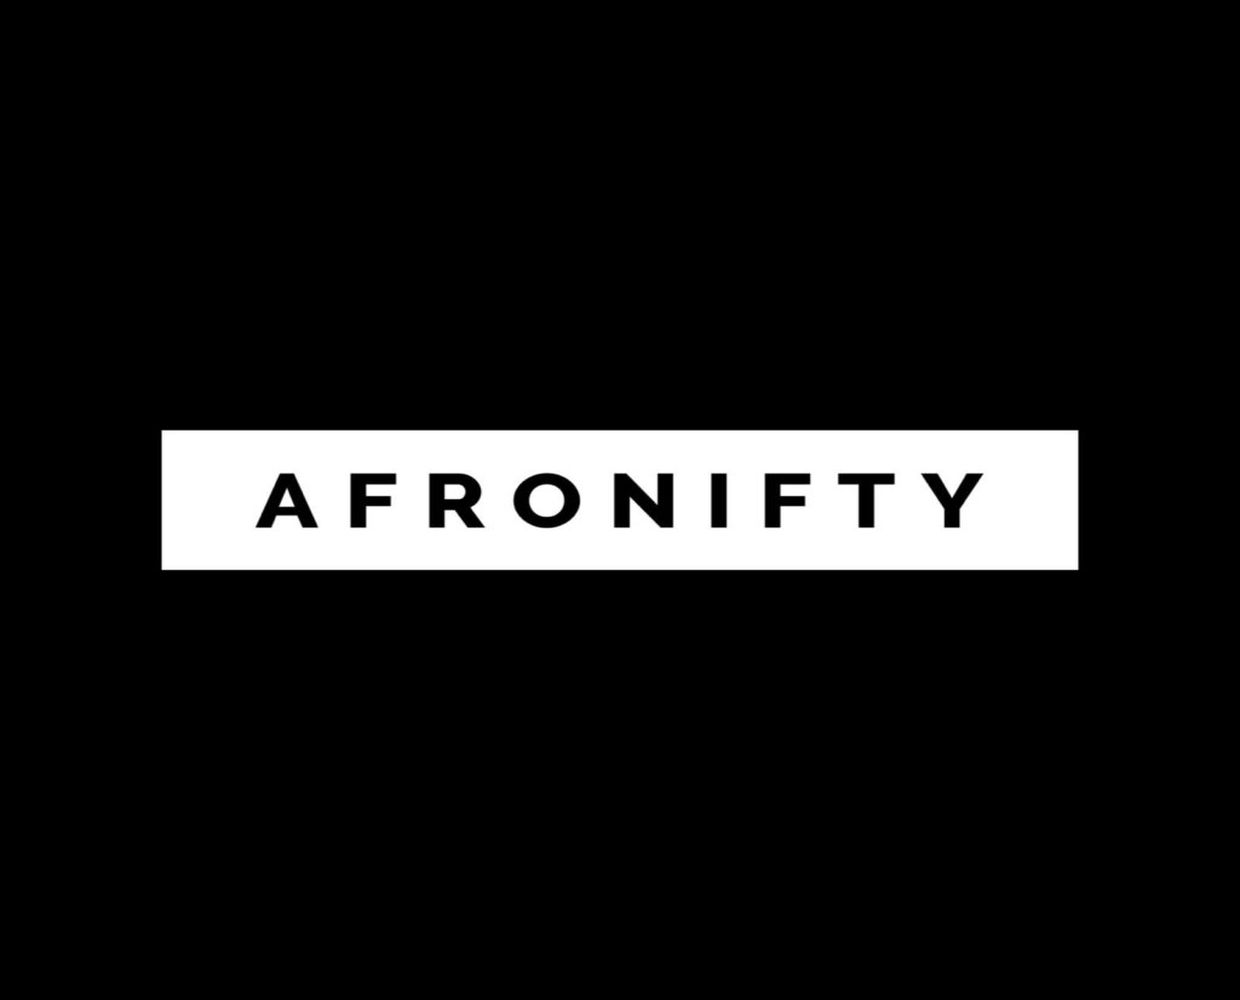 Jak Afronifty využilo vzestupu Afrobeats, aby se stalo největším NFT tržištěm v Africe?